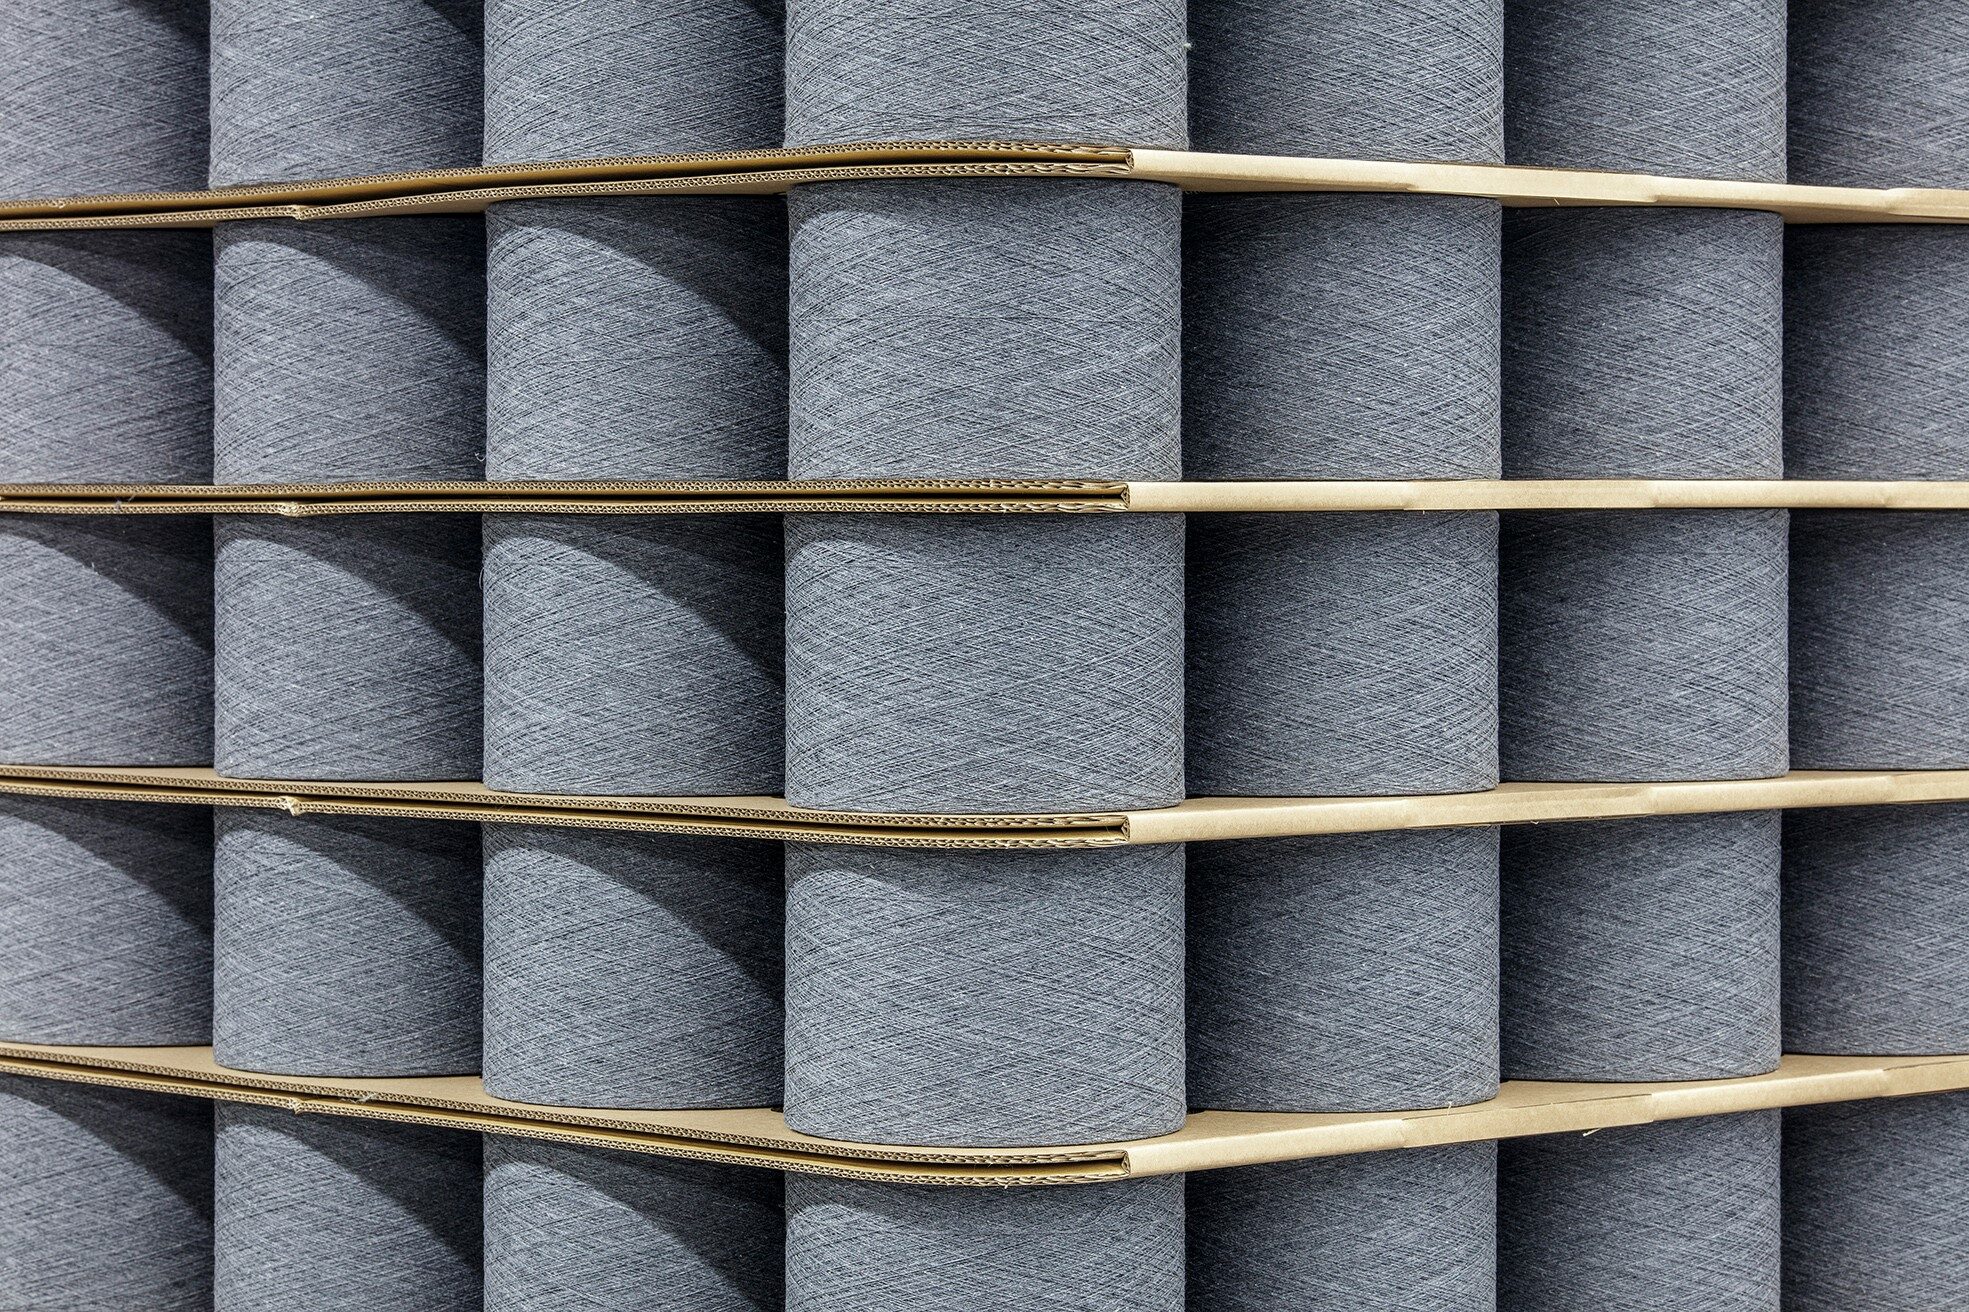 葡萄牙纱线循环回收公司 Valérius 360 与德国纺织机械公司 Trützschler 合作发展“再生纱线”